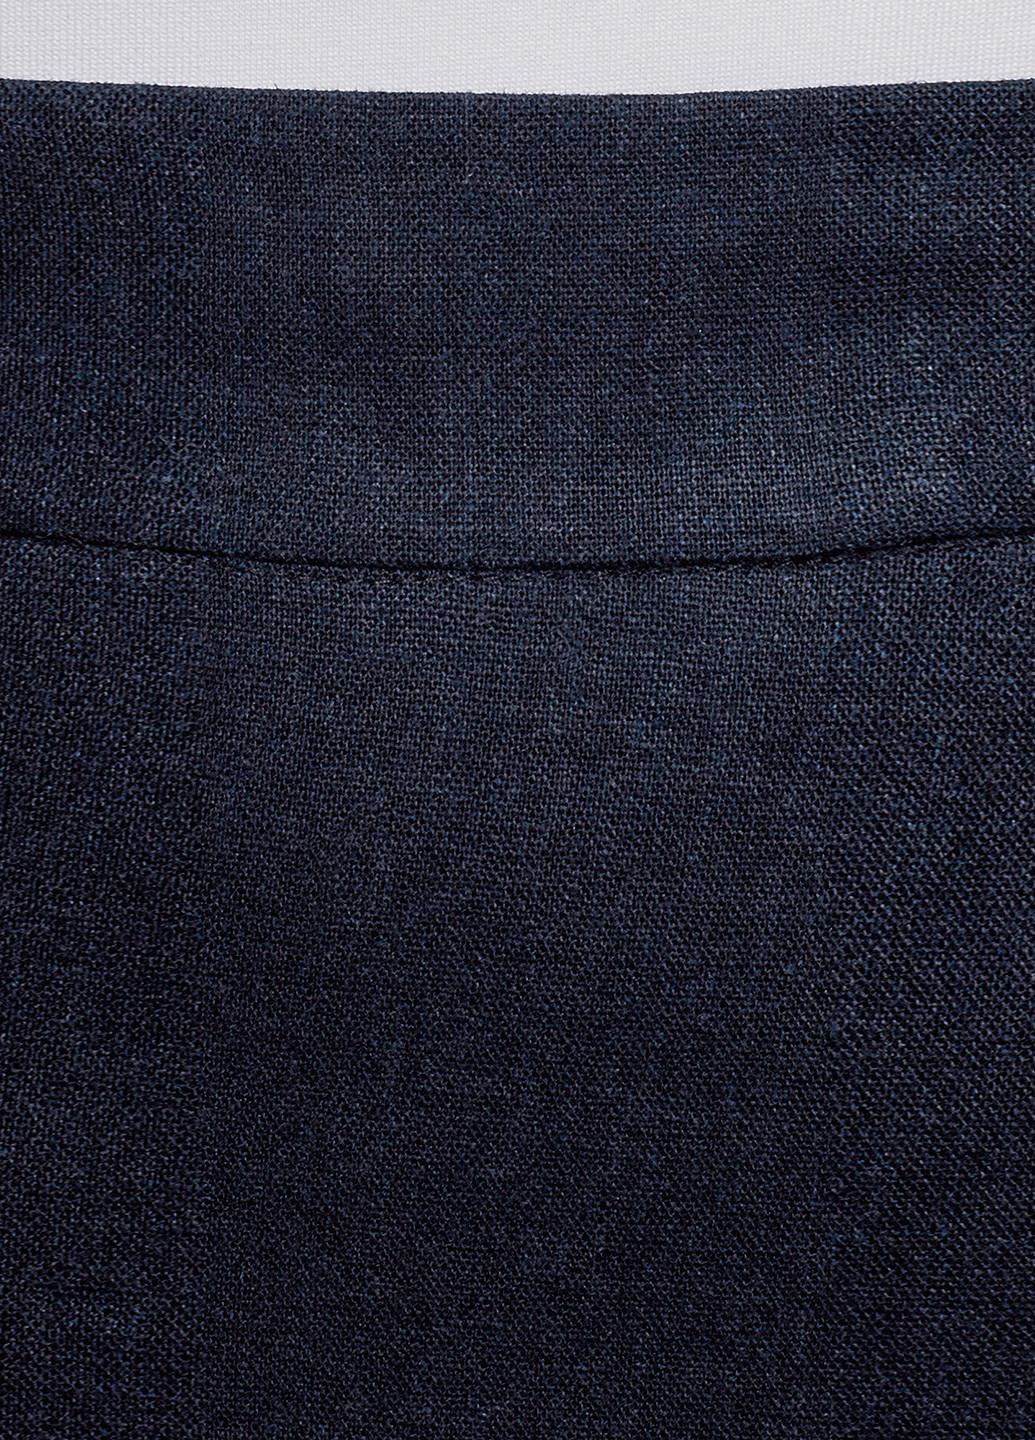 Темно-синяя офисная однотонная юбка Oodji карандаш